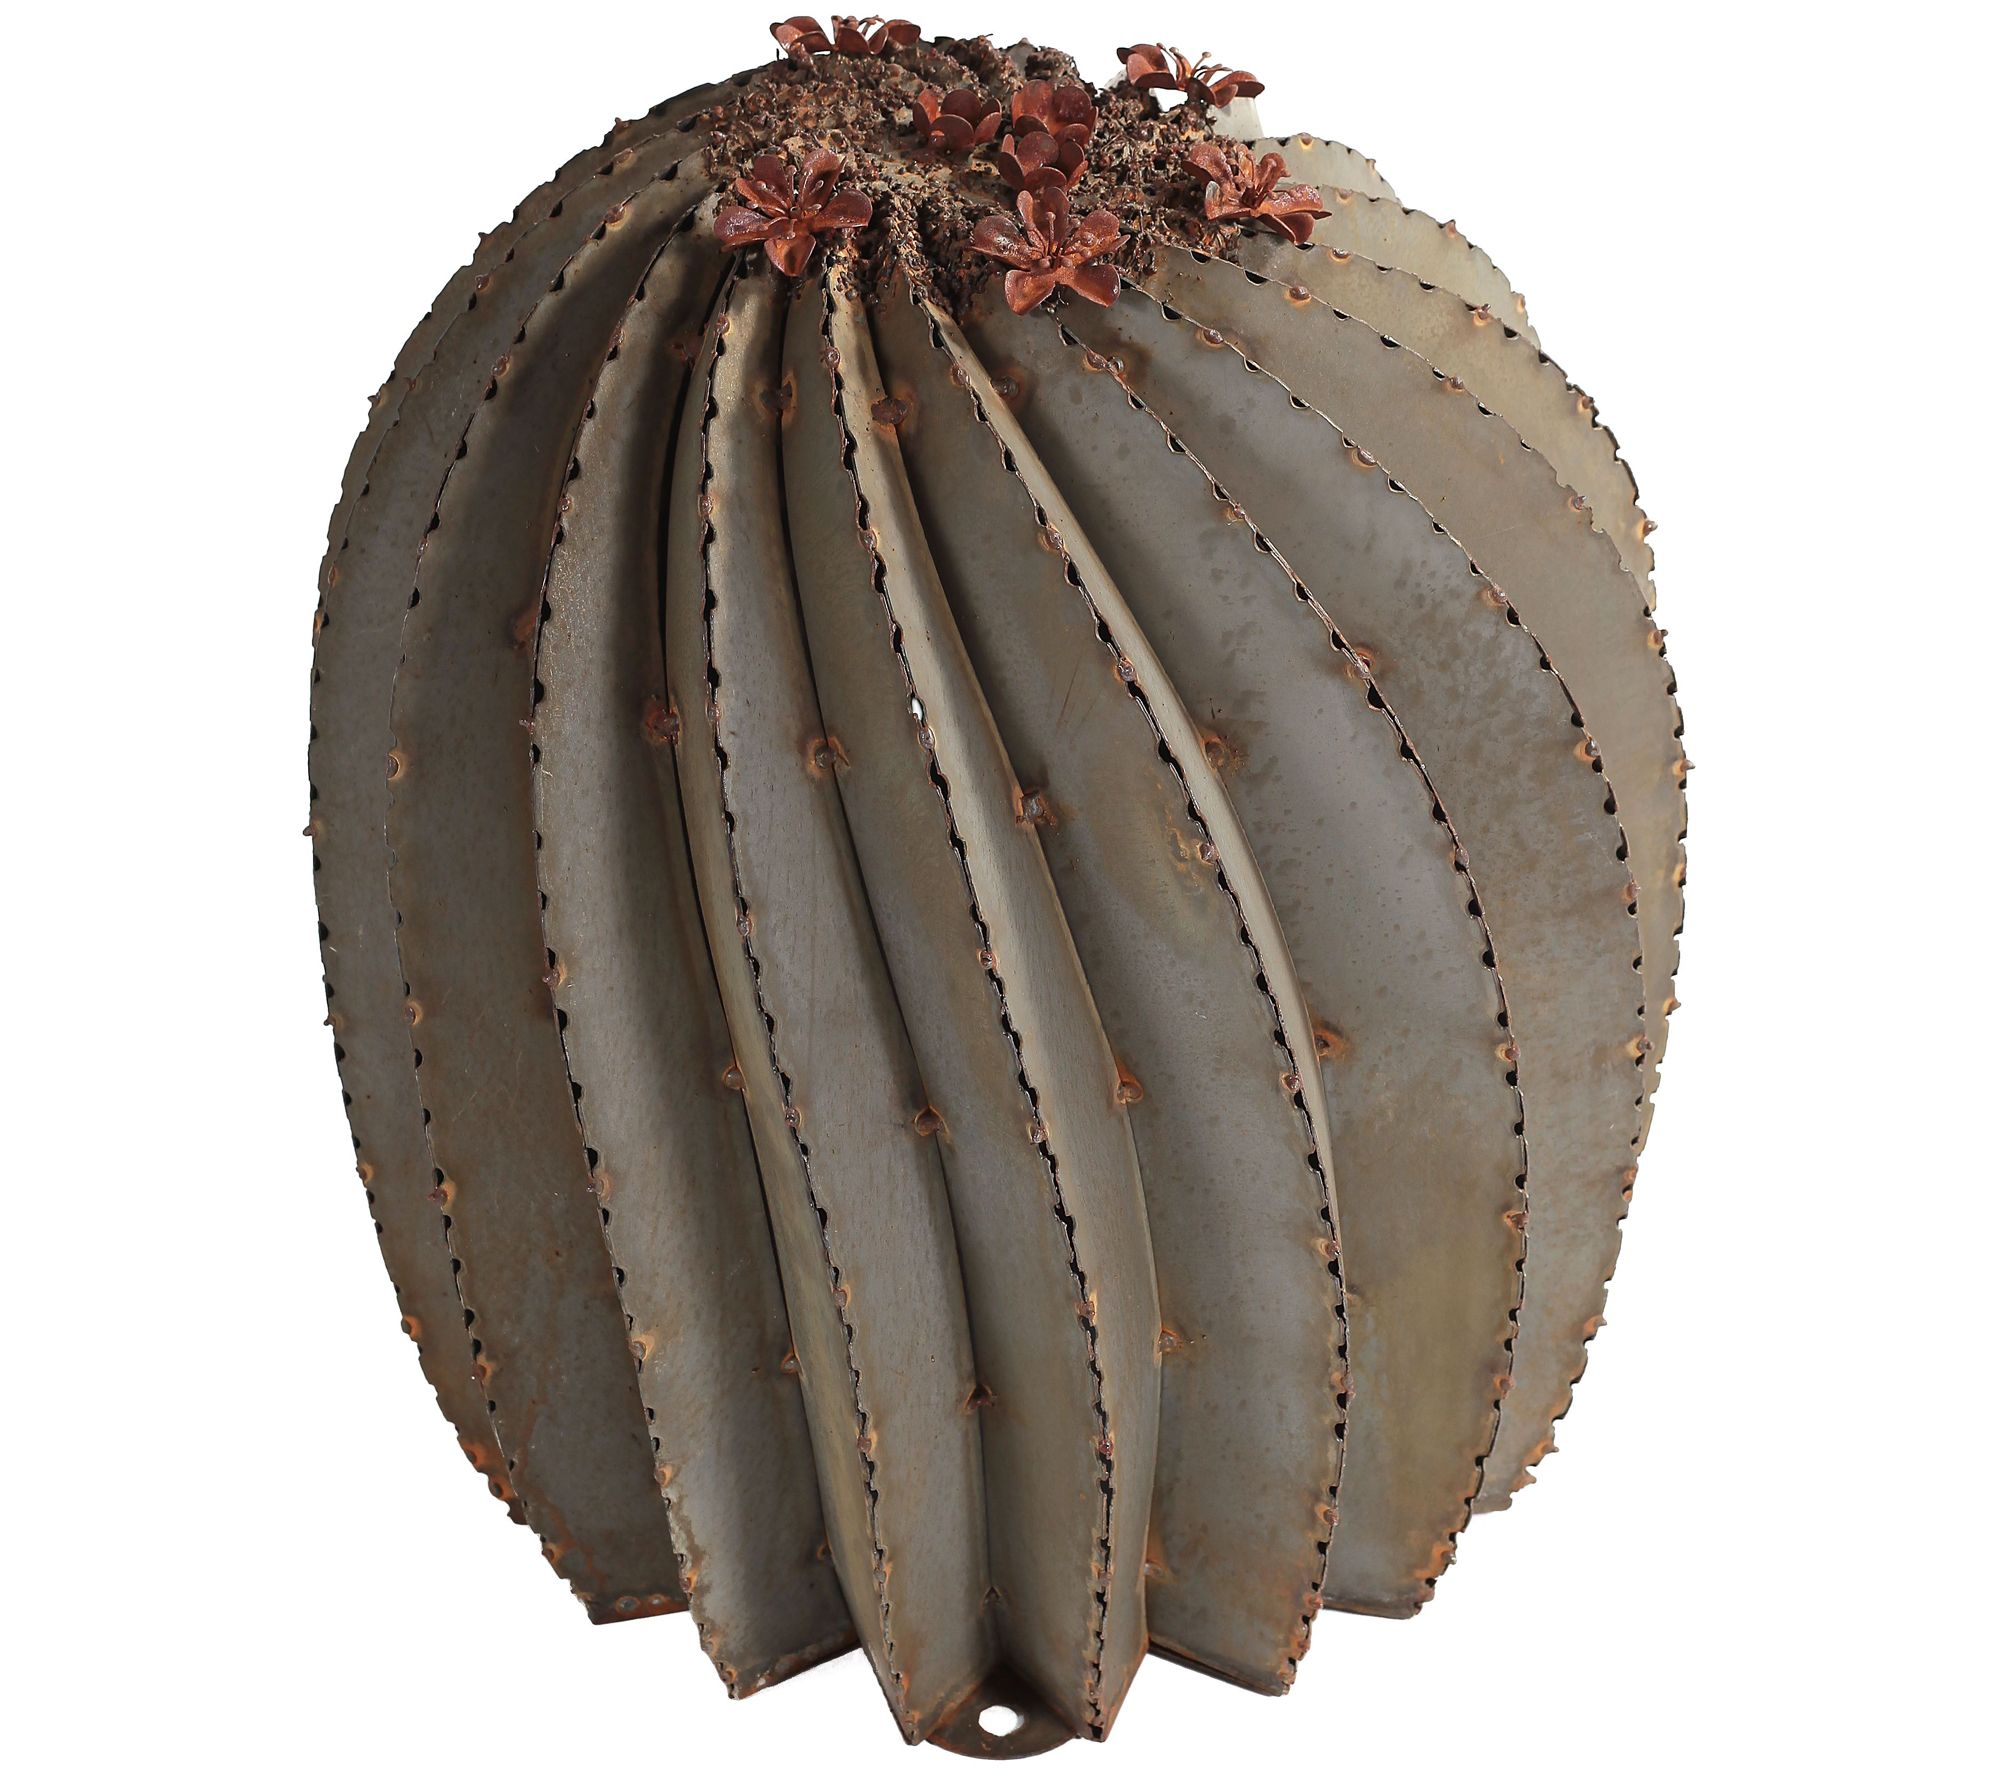 Desert Steel Outdoor Metal Fish Hook Barrel Cactus - Large 